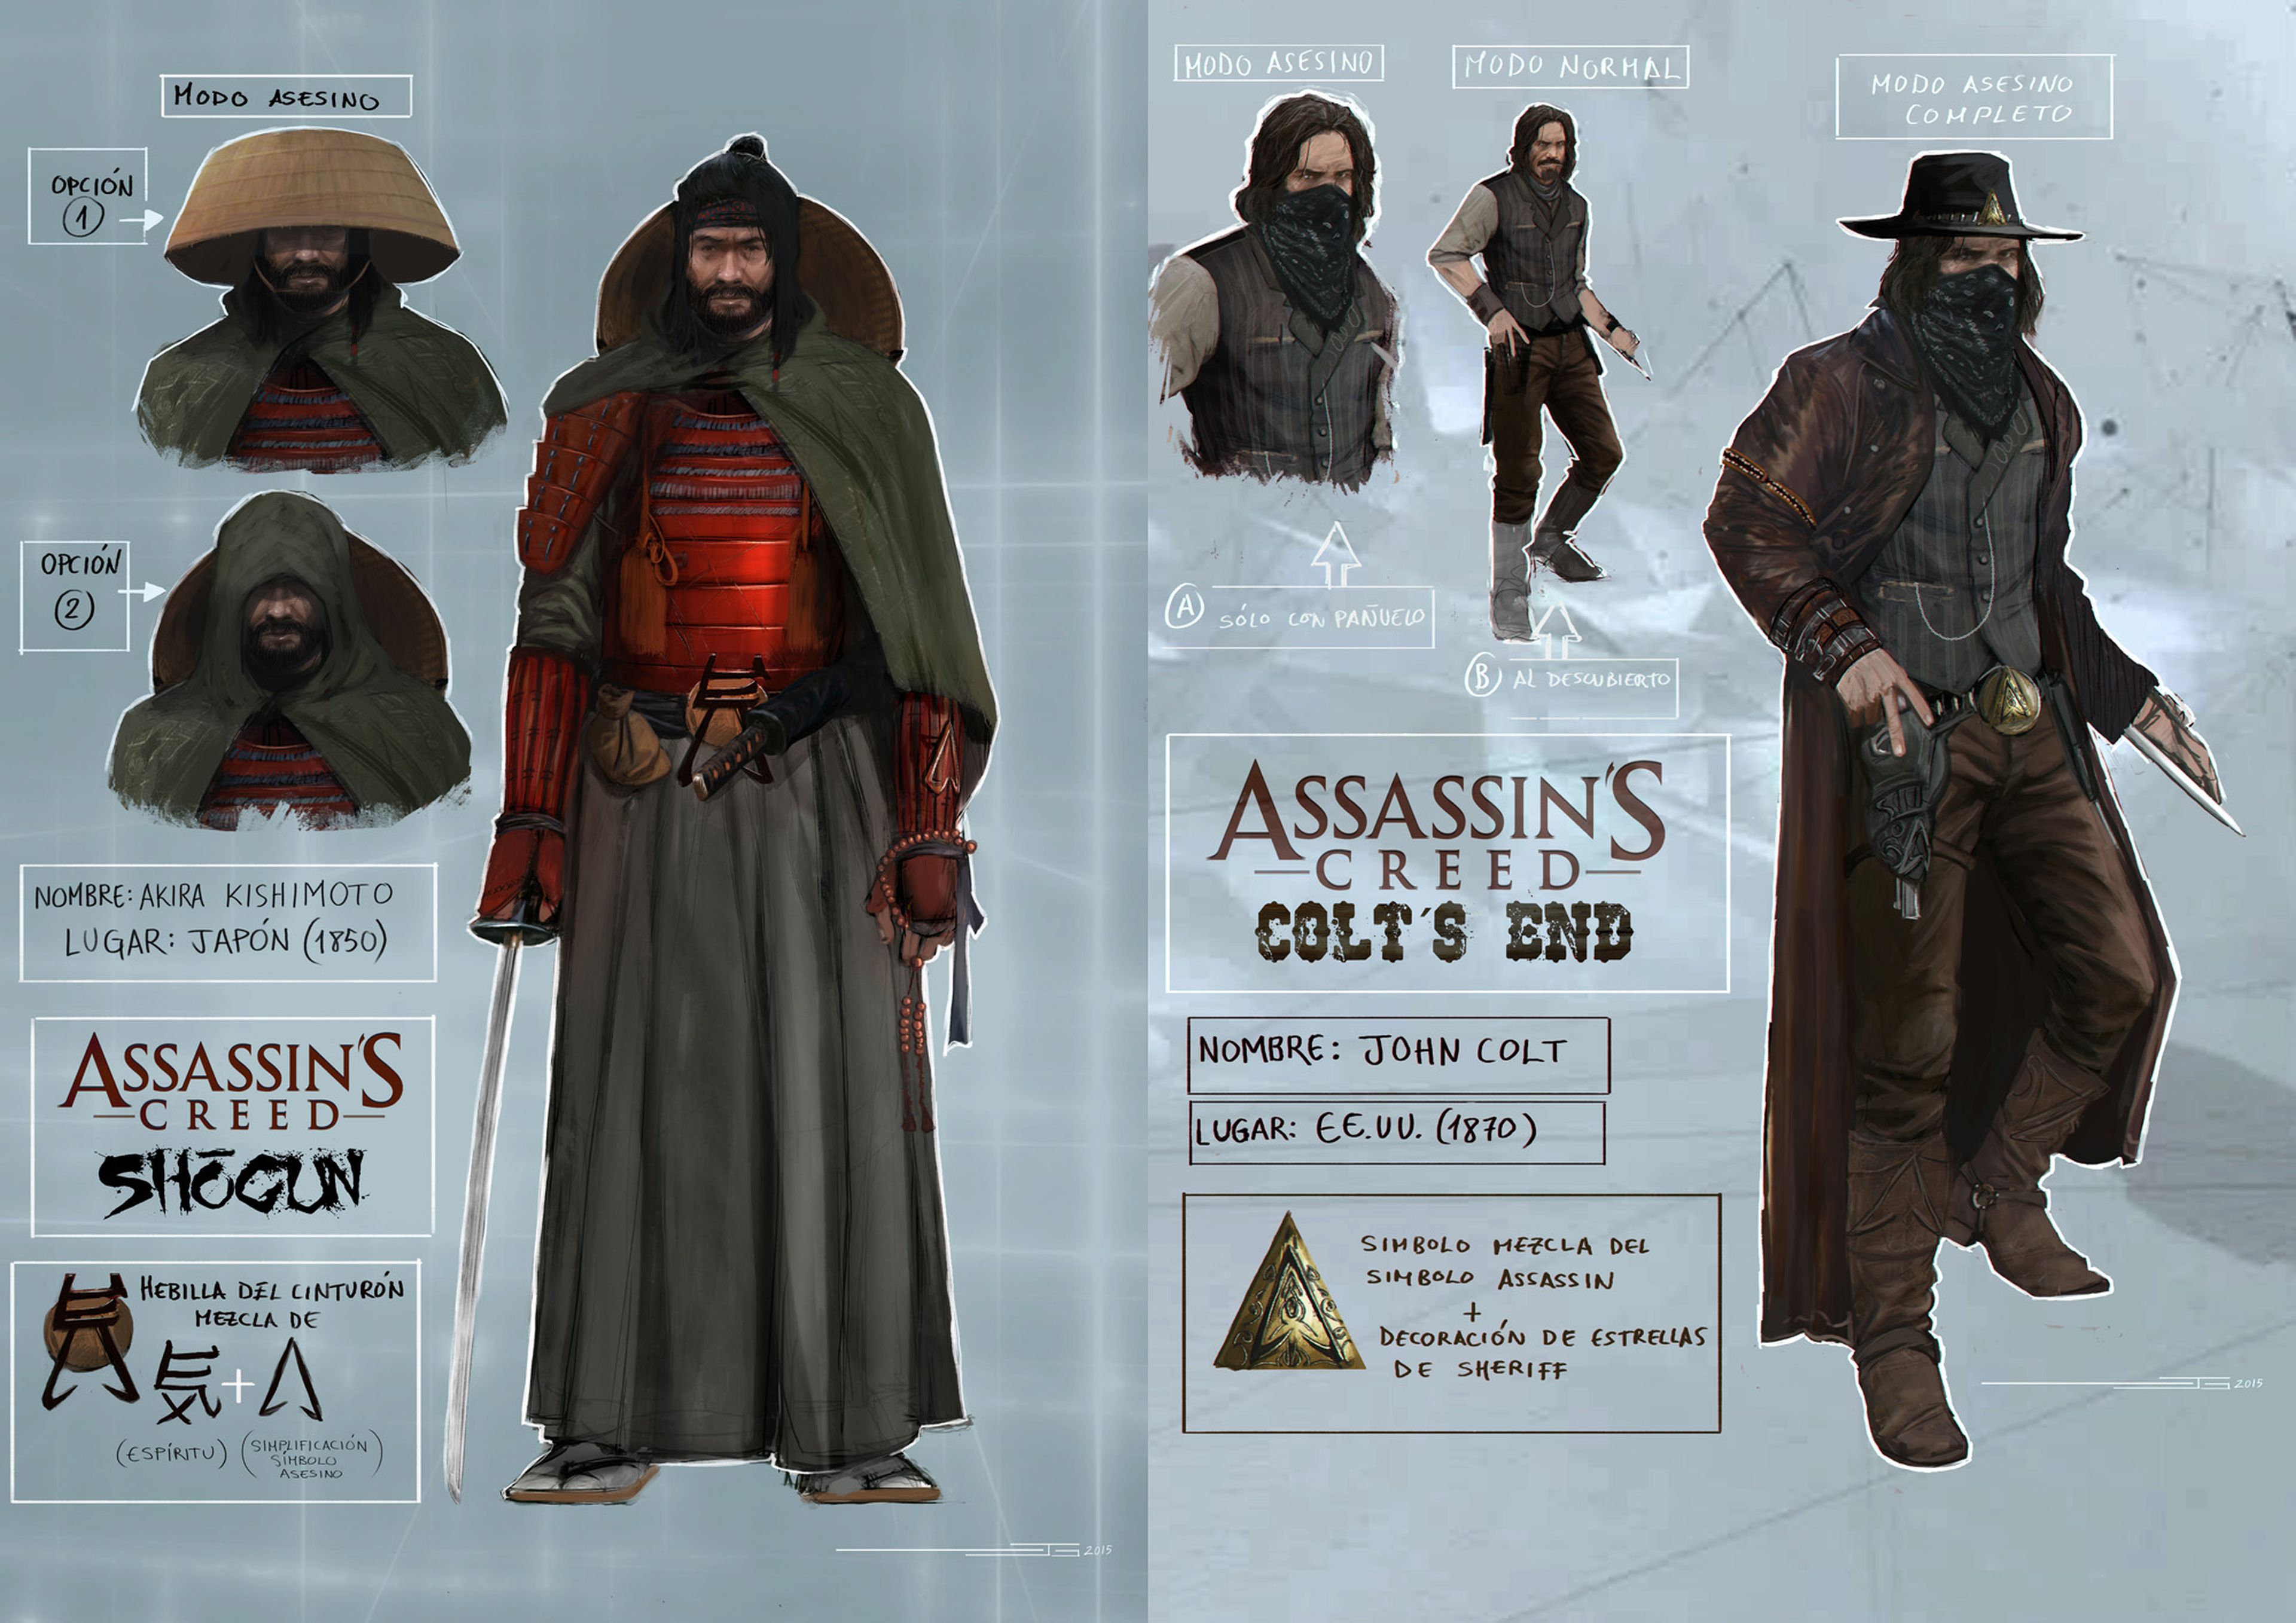 Concurso Assassin's Creed: ¡Estos son vuestros dibujos!